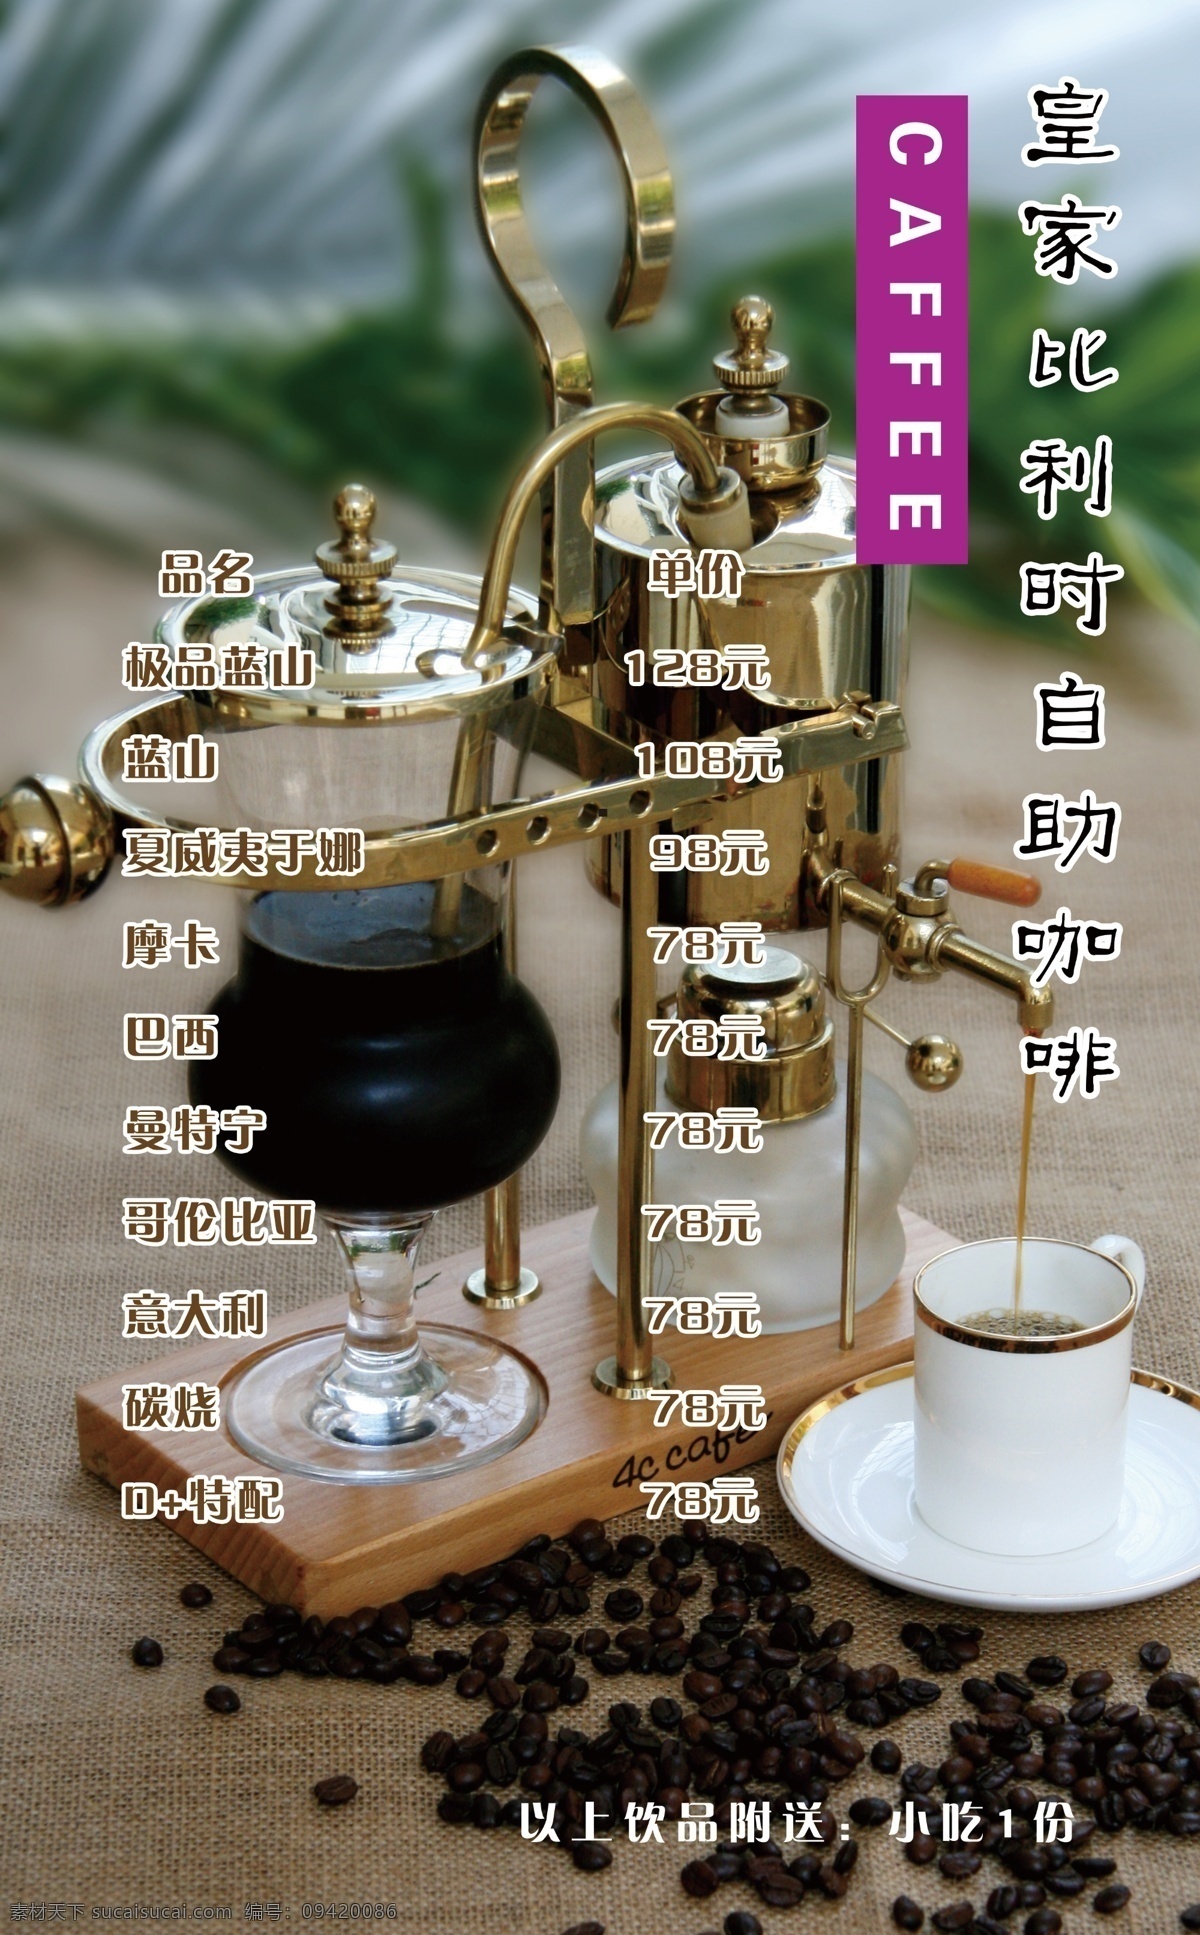 菜单菜谱 广告设计模板 咖啡菜谱 咖啡图片 源文件 咖啡 菜谱 模板下载 自助咖啡 皇家 比利时 比利时咖啡 画册 菜单 封面